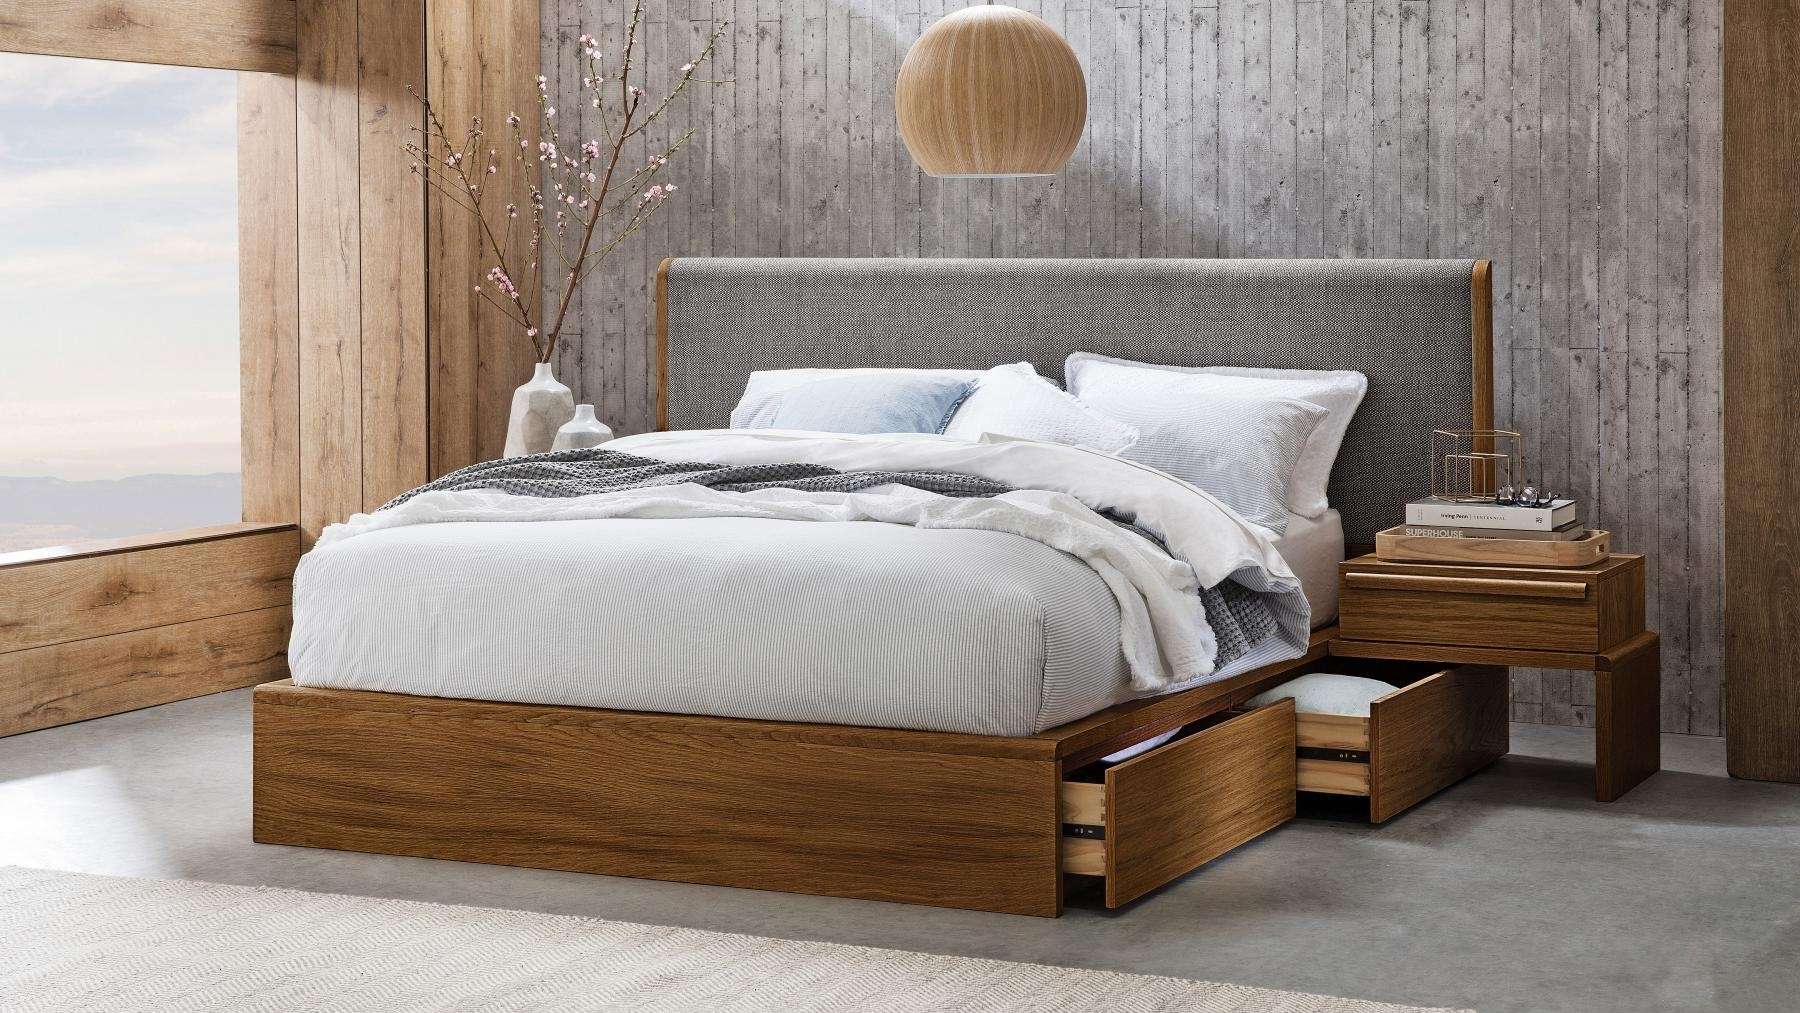 Giường gỗ bọc vải nệm đầu giường đẹp sang trọng